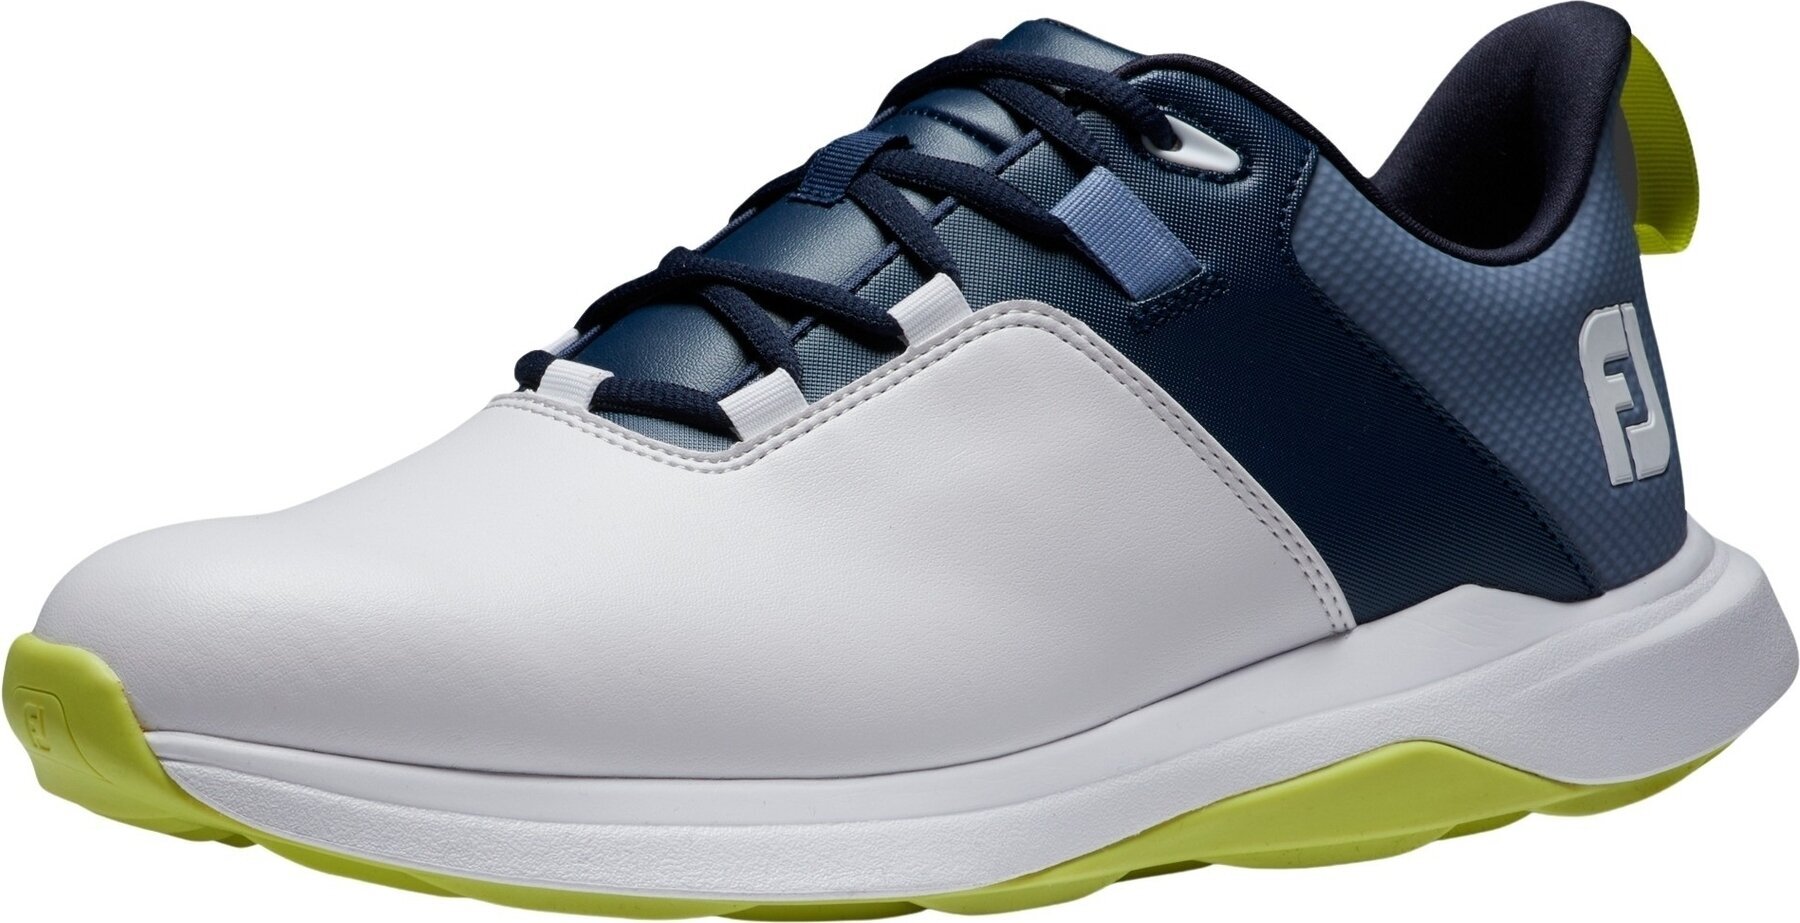 Chaussures de golf pour hommes Footjoy ProLite Mens Golf Shoes White/Navy/Lime 46